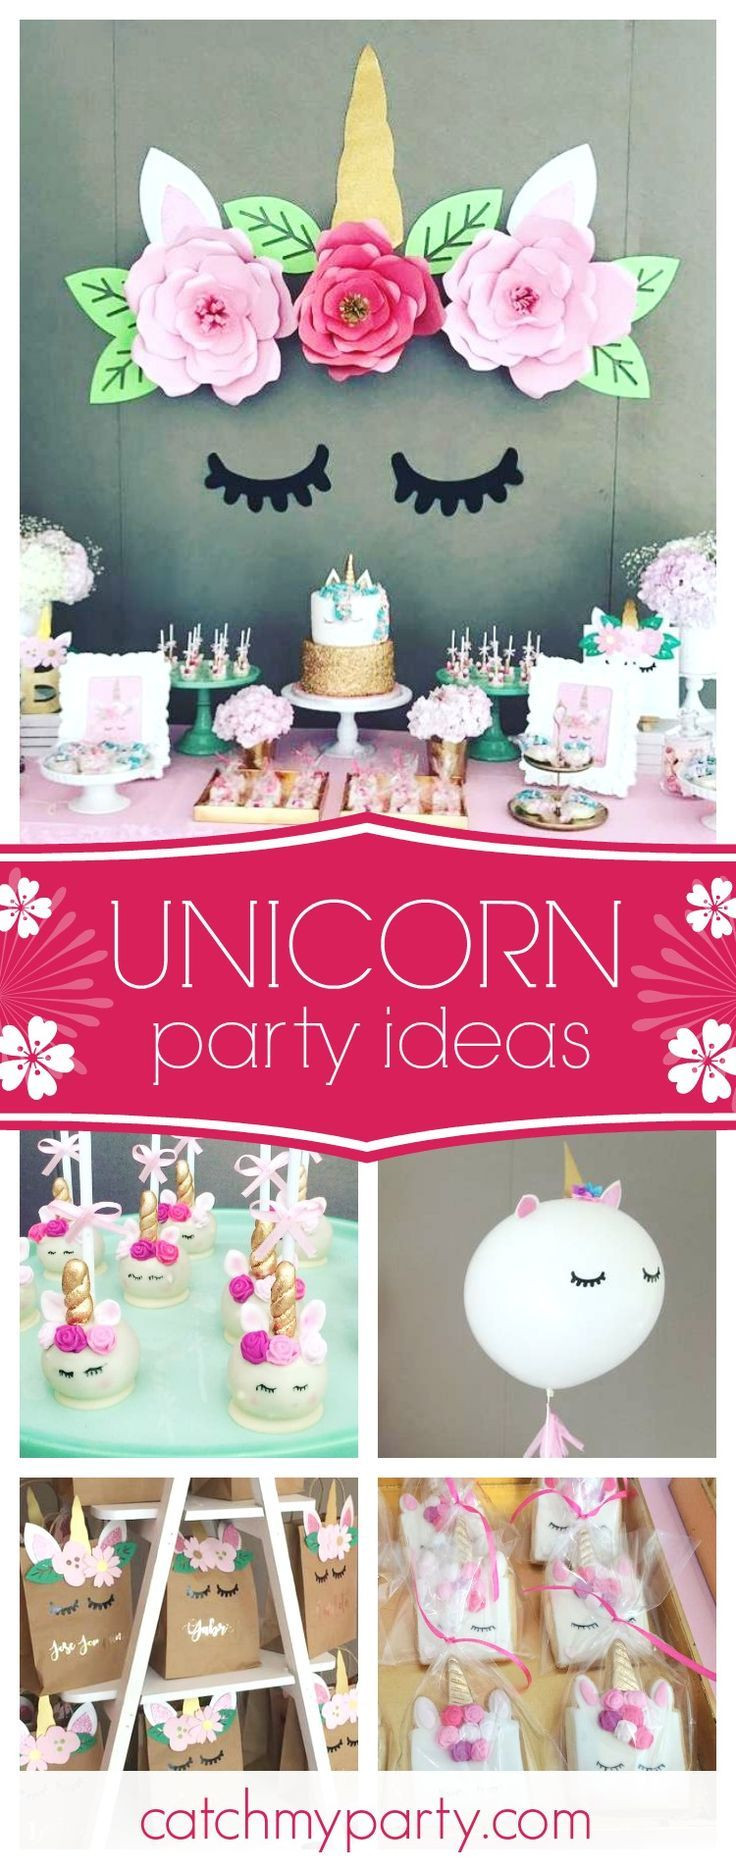 Unicorn Ideas For Party
 Best 25 Unicorn birthday parties ideas on Pinterest